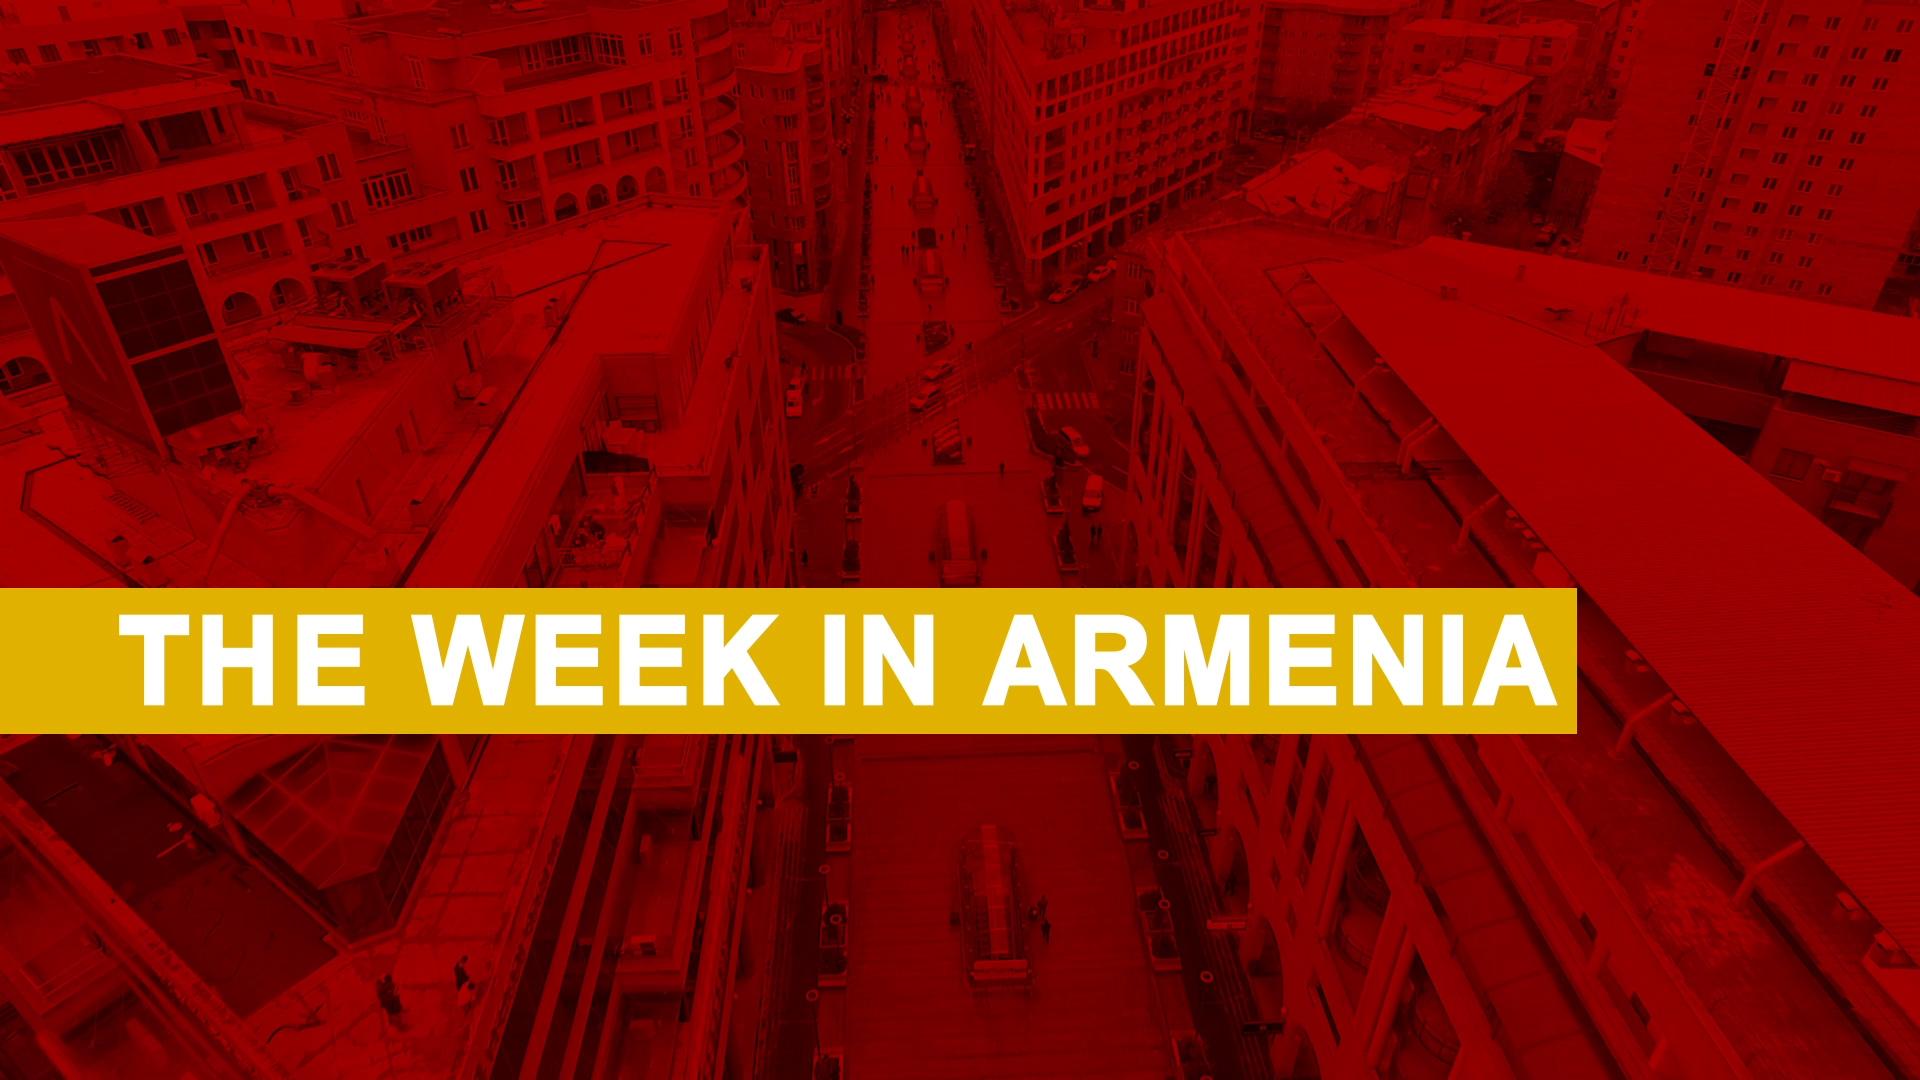 The Week in Armenia, Sept. 5